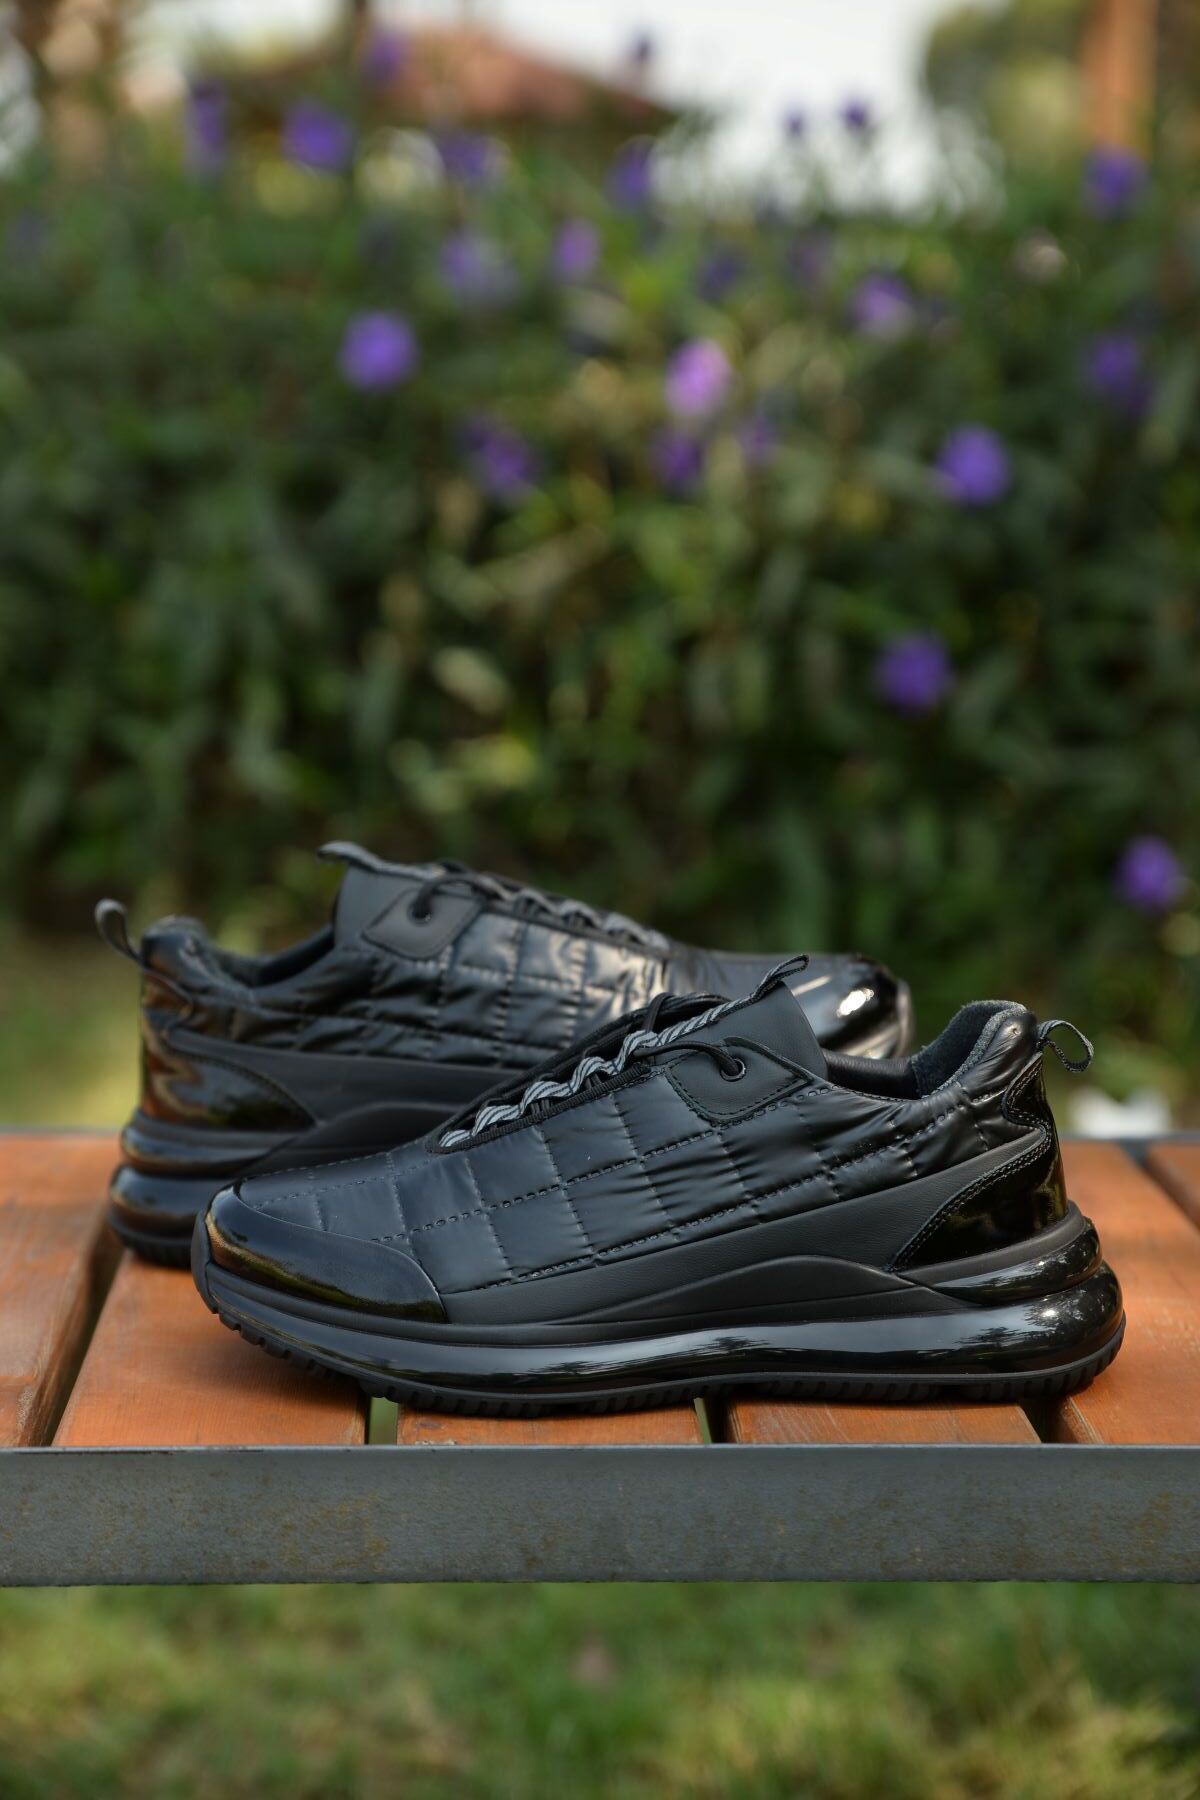 MARCOMEN Erkek Kışlık %100 Deri Siyah Sneaker Ayakkabı Yenilikçi Tarzıyla Şıklığı Ve Konforu Bir Arada Sunar